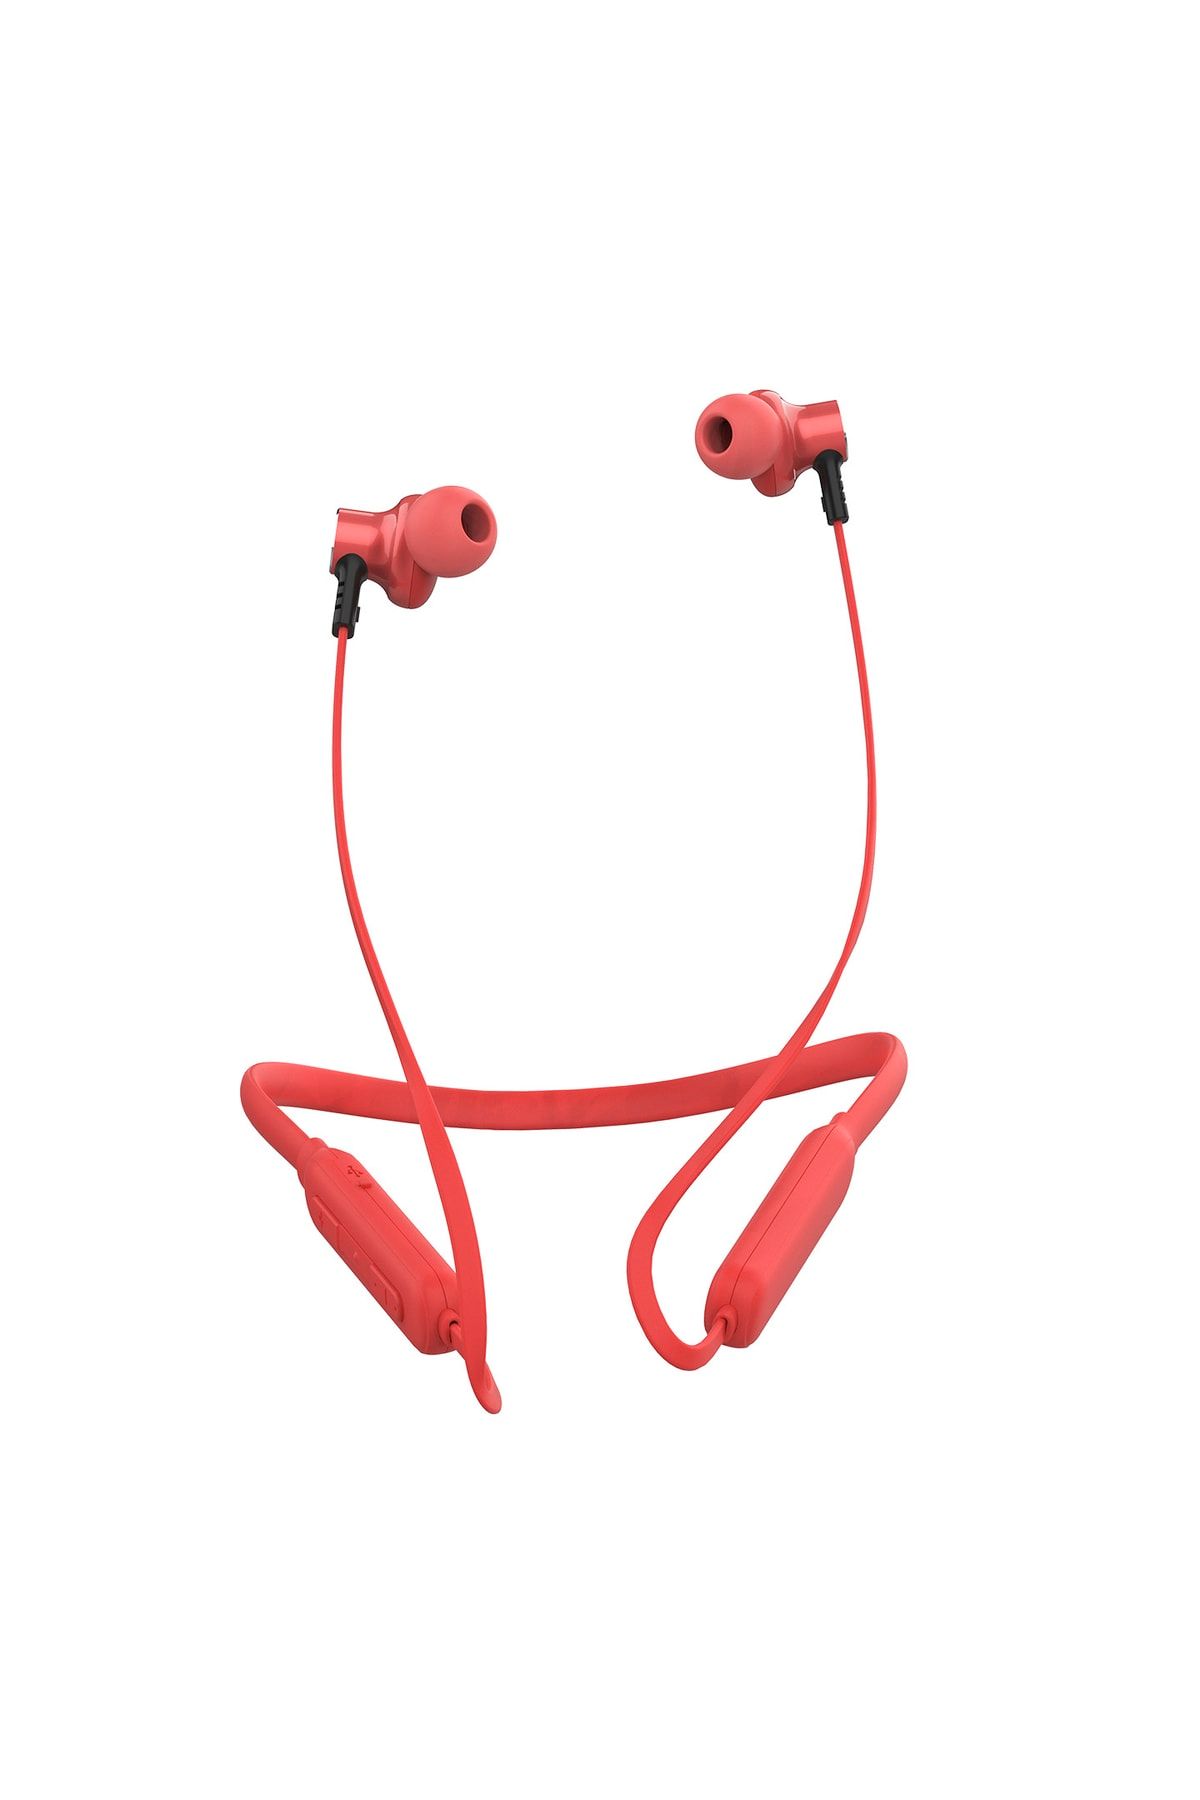 Snopy Sn-xbk02 Lotus Kırmızı Boyun Askılı Mıknatıslı Bluetooth Spor Kulak Içi Kulaklık Mikrofon